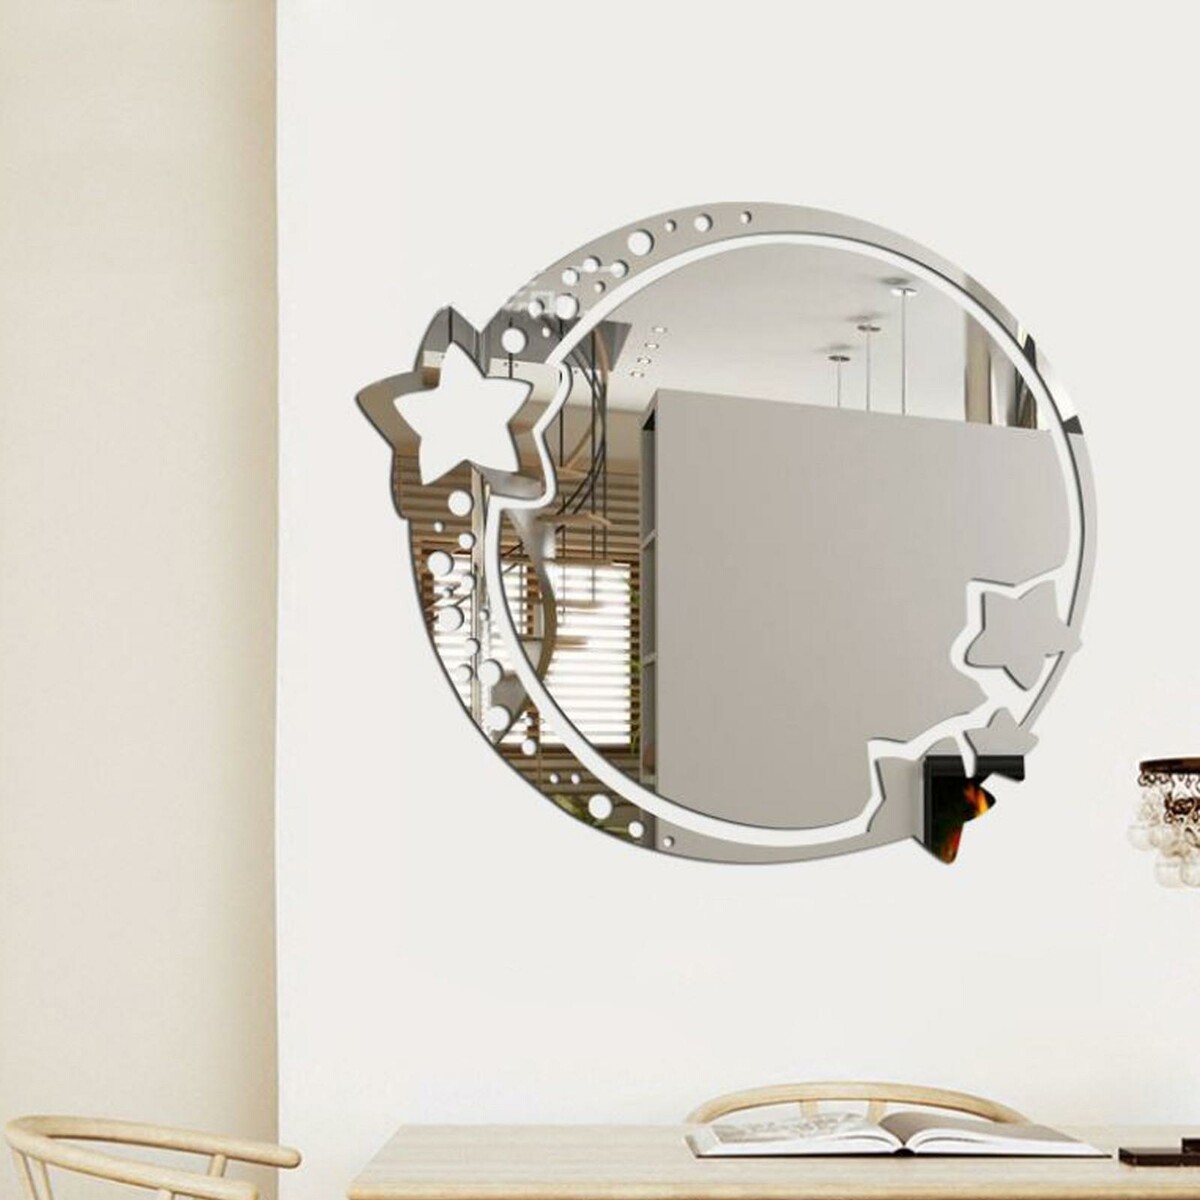 Зеркало настенное, наклейки интерьерные, зеркальные, декор на стену, панно 22 х 19 см наклейки интерьерные с фоторамками декор настенный панно на стену 190 х 156 см